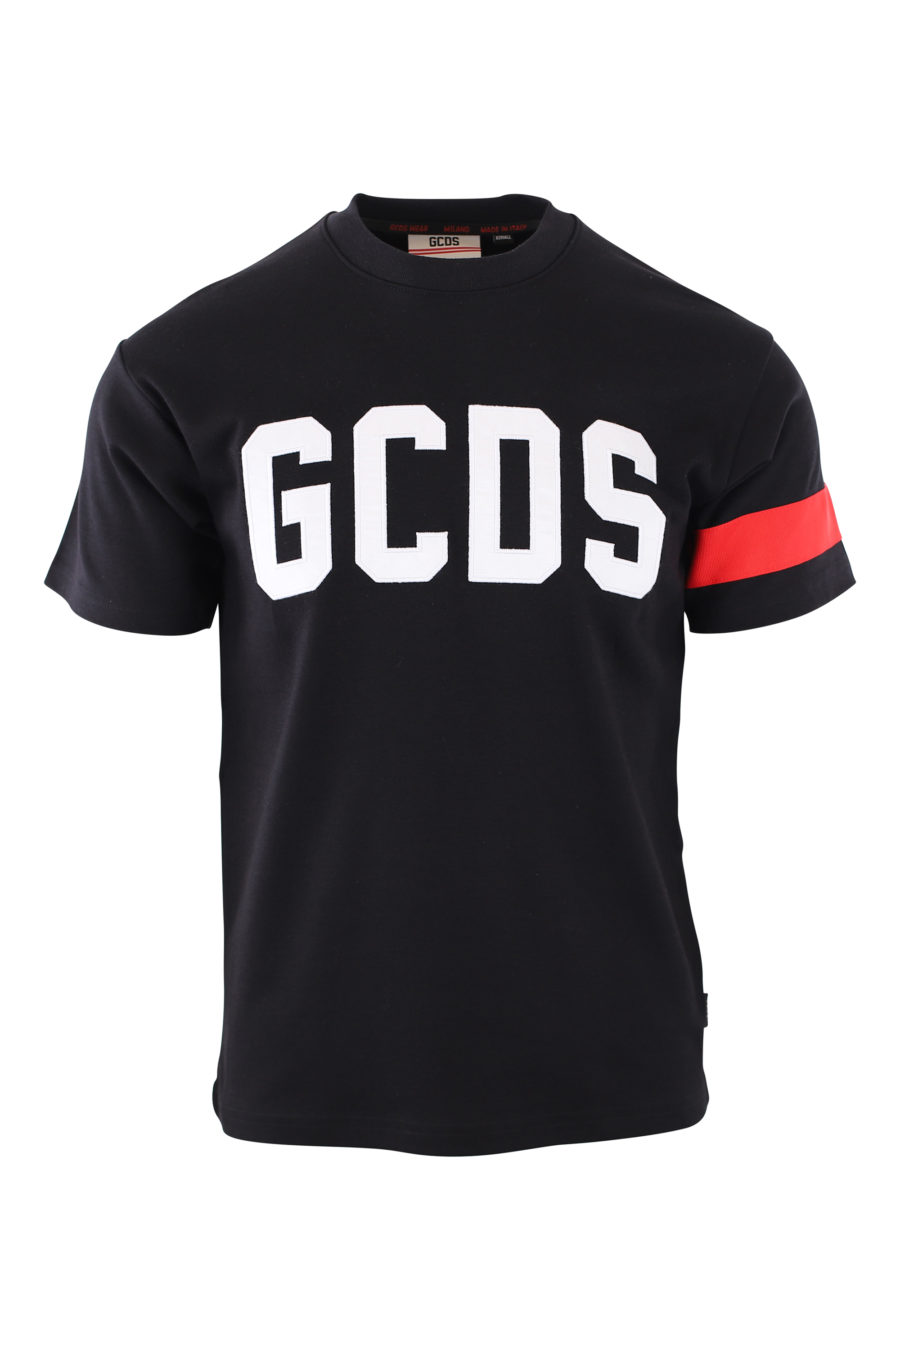 T-shirt preta com logótipo bordado a branco e pormenor vermelho nas mangas - IMG 2099